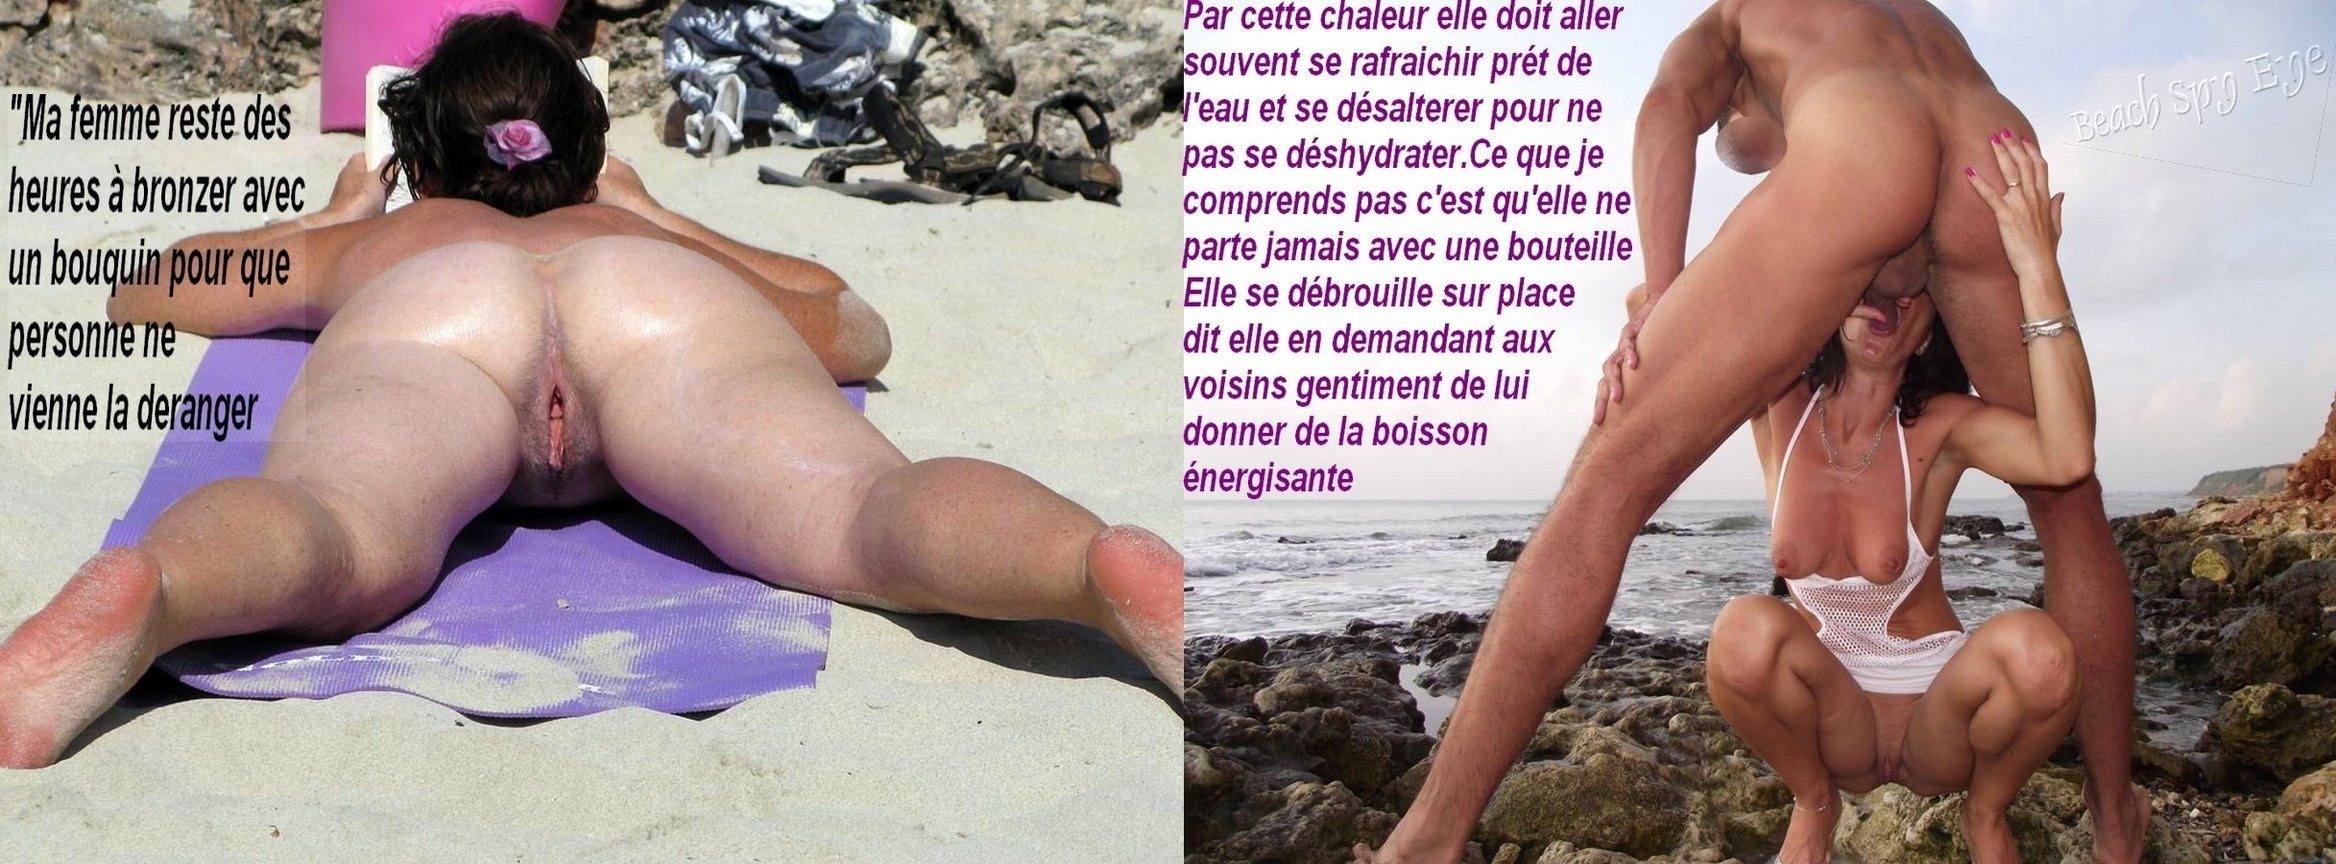 жена на нудистском пляже порно фото 101